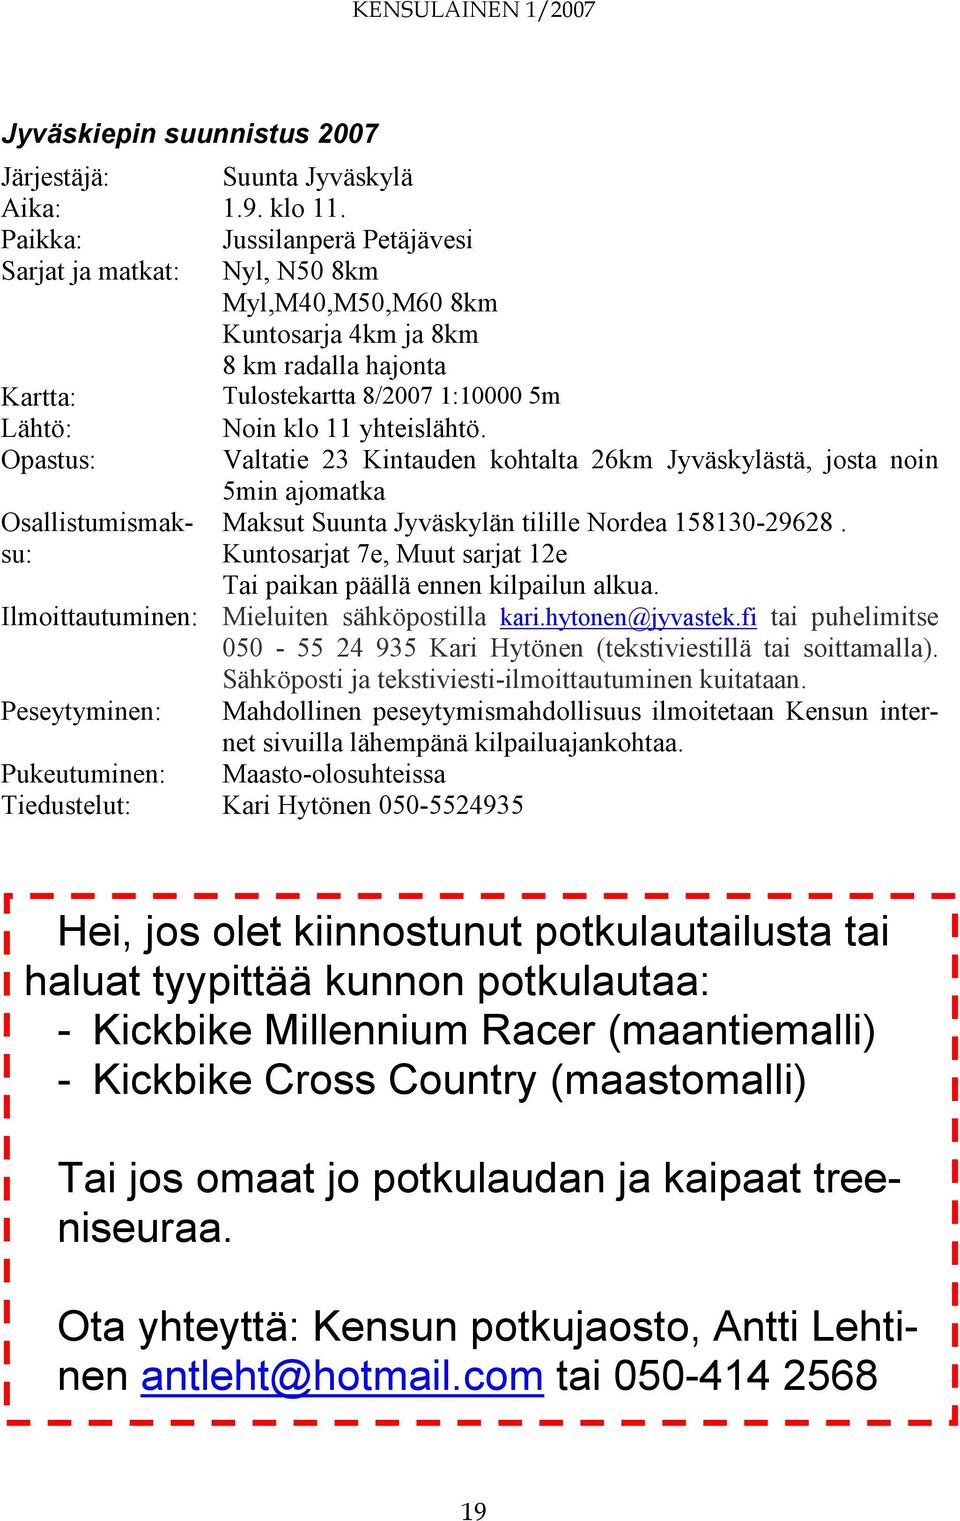 Opastus: Valtatie 23 Kintauden kohtalta 26km Jyväskylästä, josta noin 5min ajomatka Osallistumismaksu: Maksut Suunta Jyväskylän tilille Nordea 158130-29628.